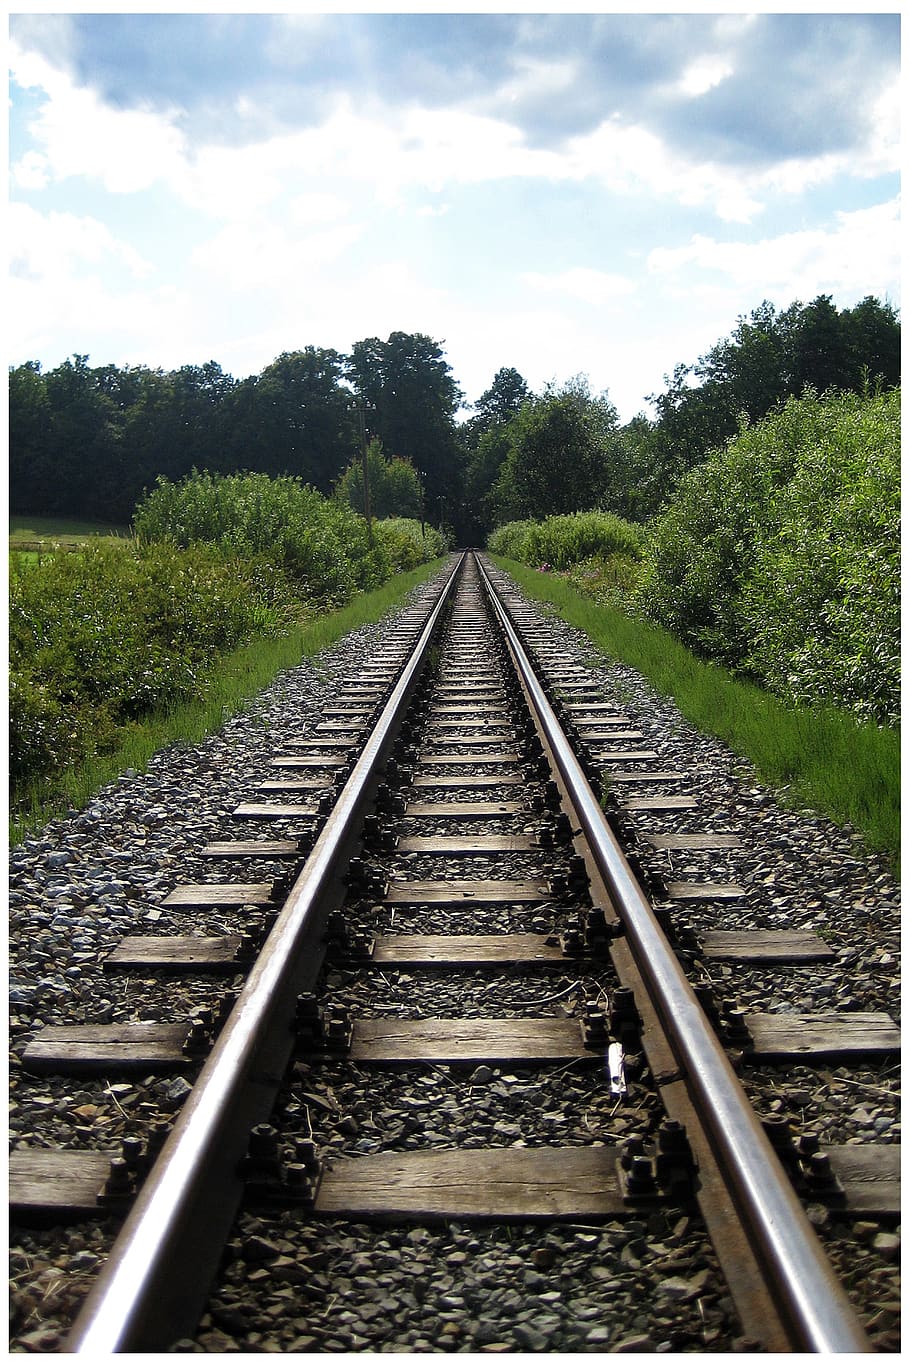 gleise, trem, ferrovia, trilhos, transporte, trilhos de trem, distância, céu, trilha, viagem